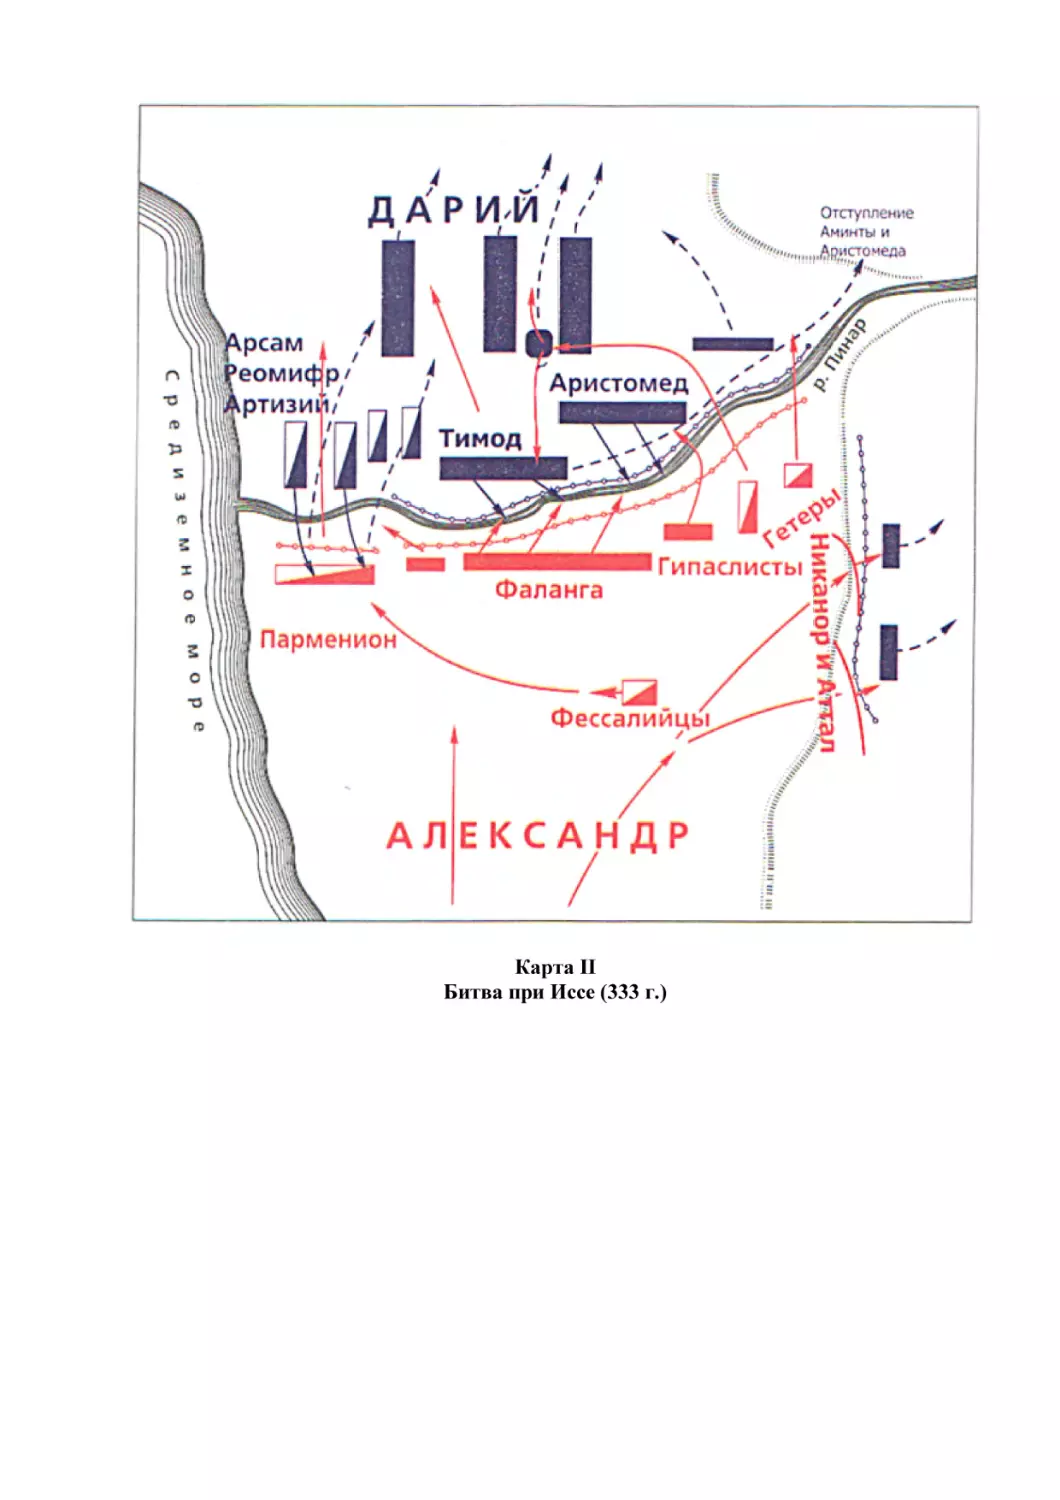 Карта II
Битва при Иссе (333 г.)